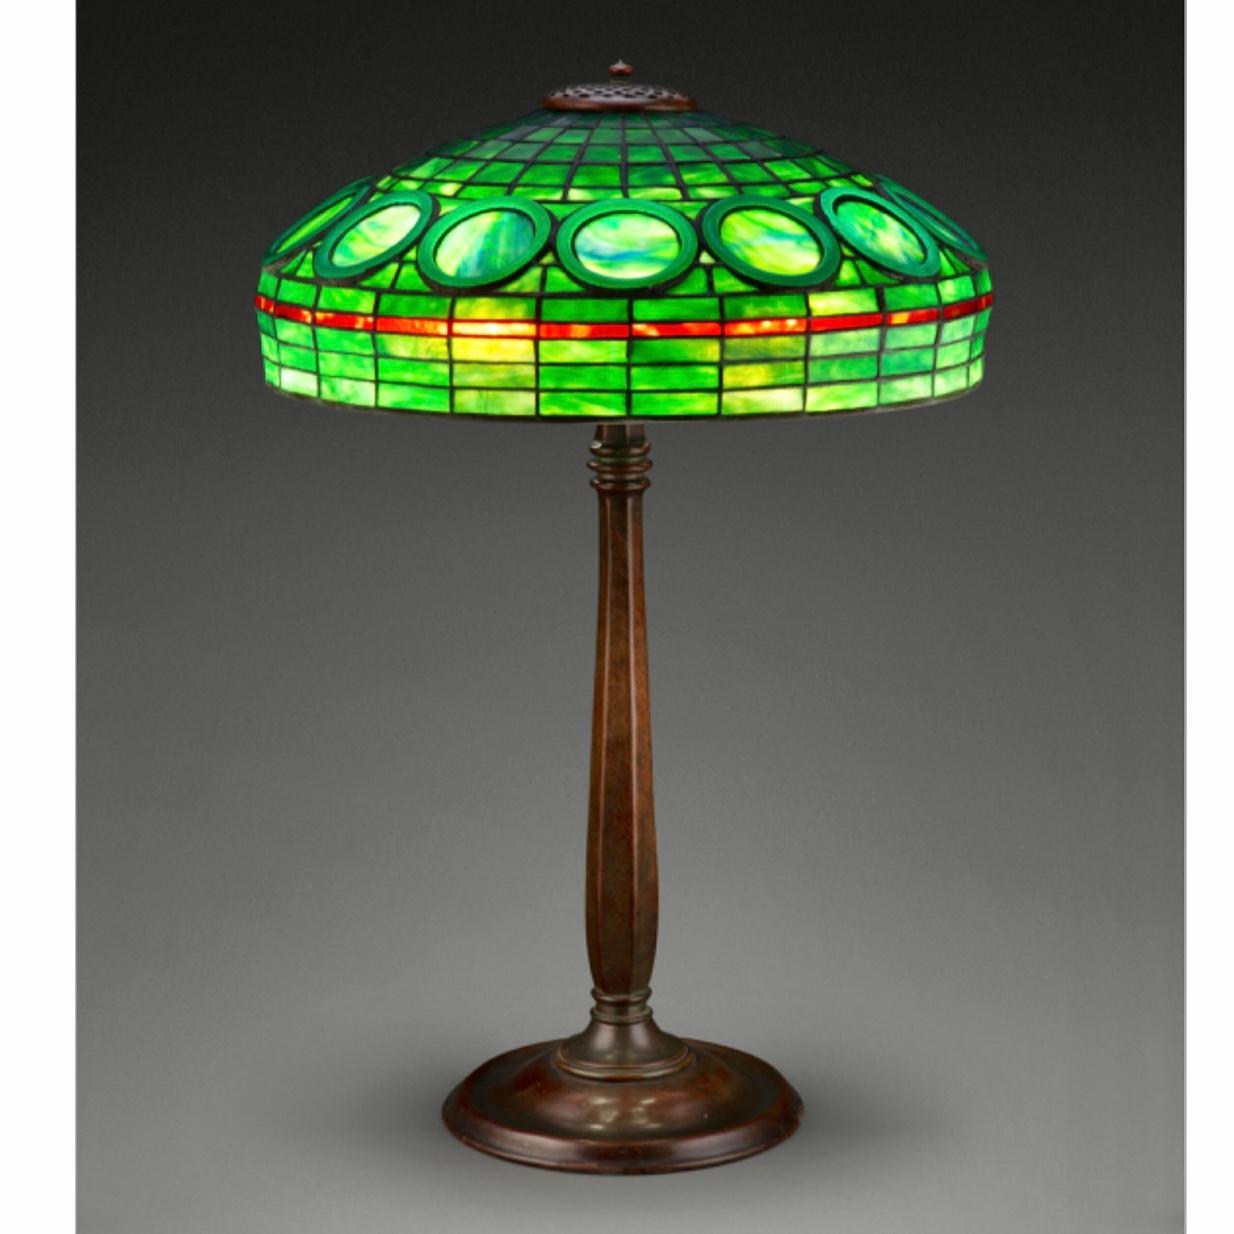 Rare lampe de table géométrique en verre au plomb et bronze patiné des studios Tiffany, vers 1910.
Il s'agit d'une rare lampe de table de grande taille, unique en son genre, des premiers studios Tiffany, illustrée dans le catalogue Raisonne